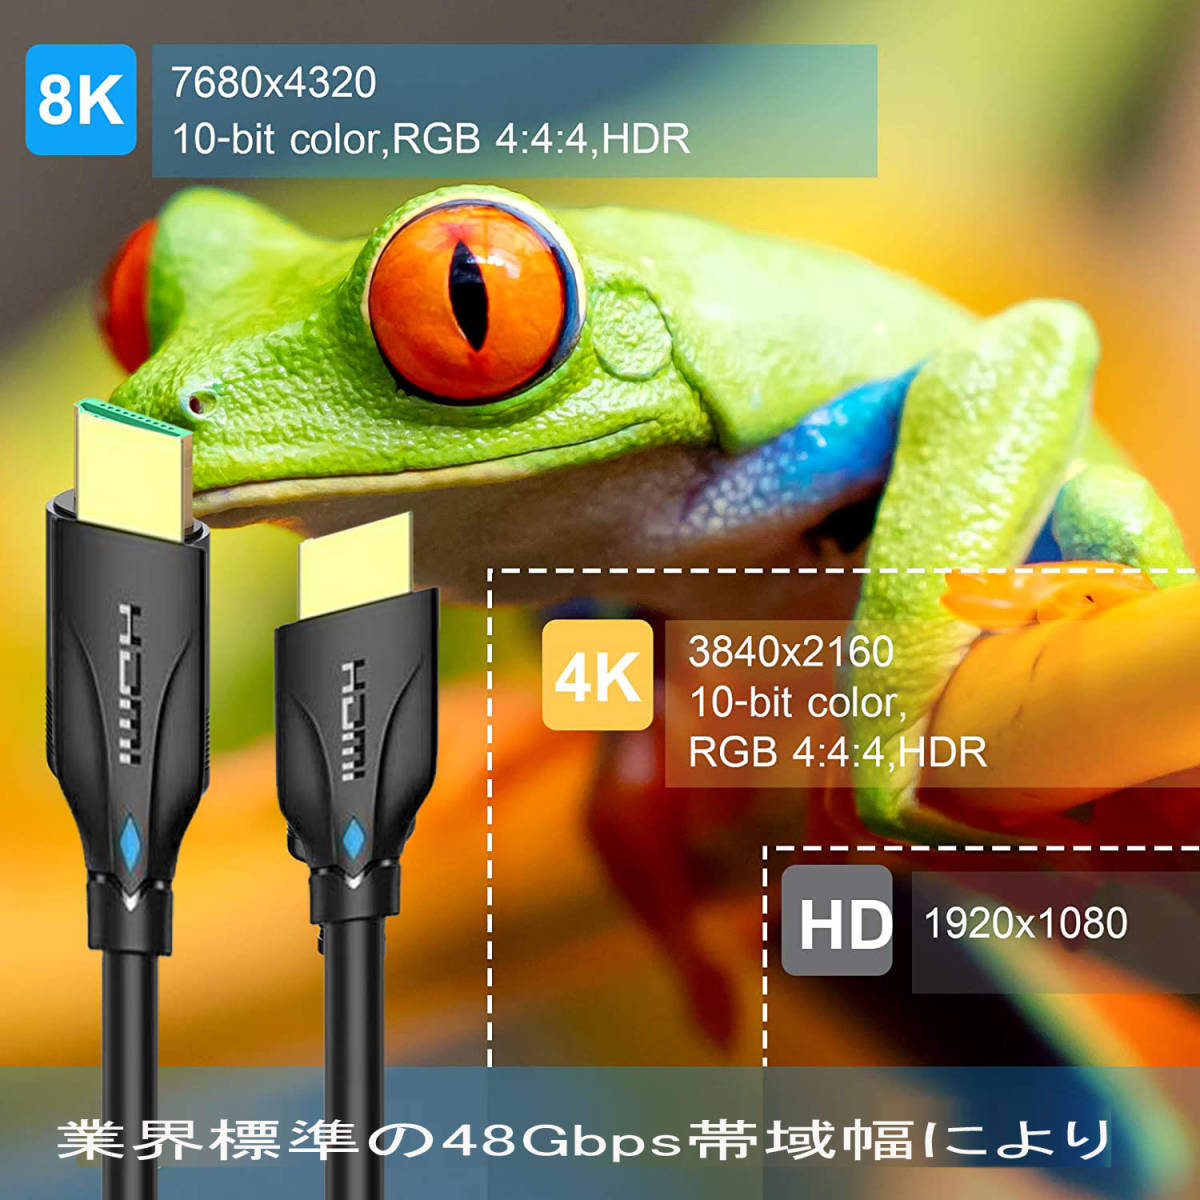 2m HDMI 2.1ケーブル8K/60Hz TV/ps5/Xbox/PC対応